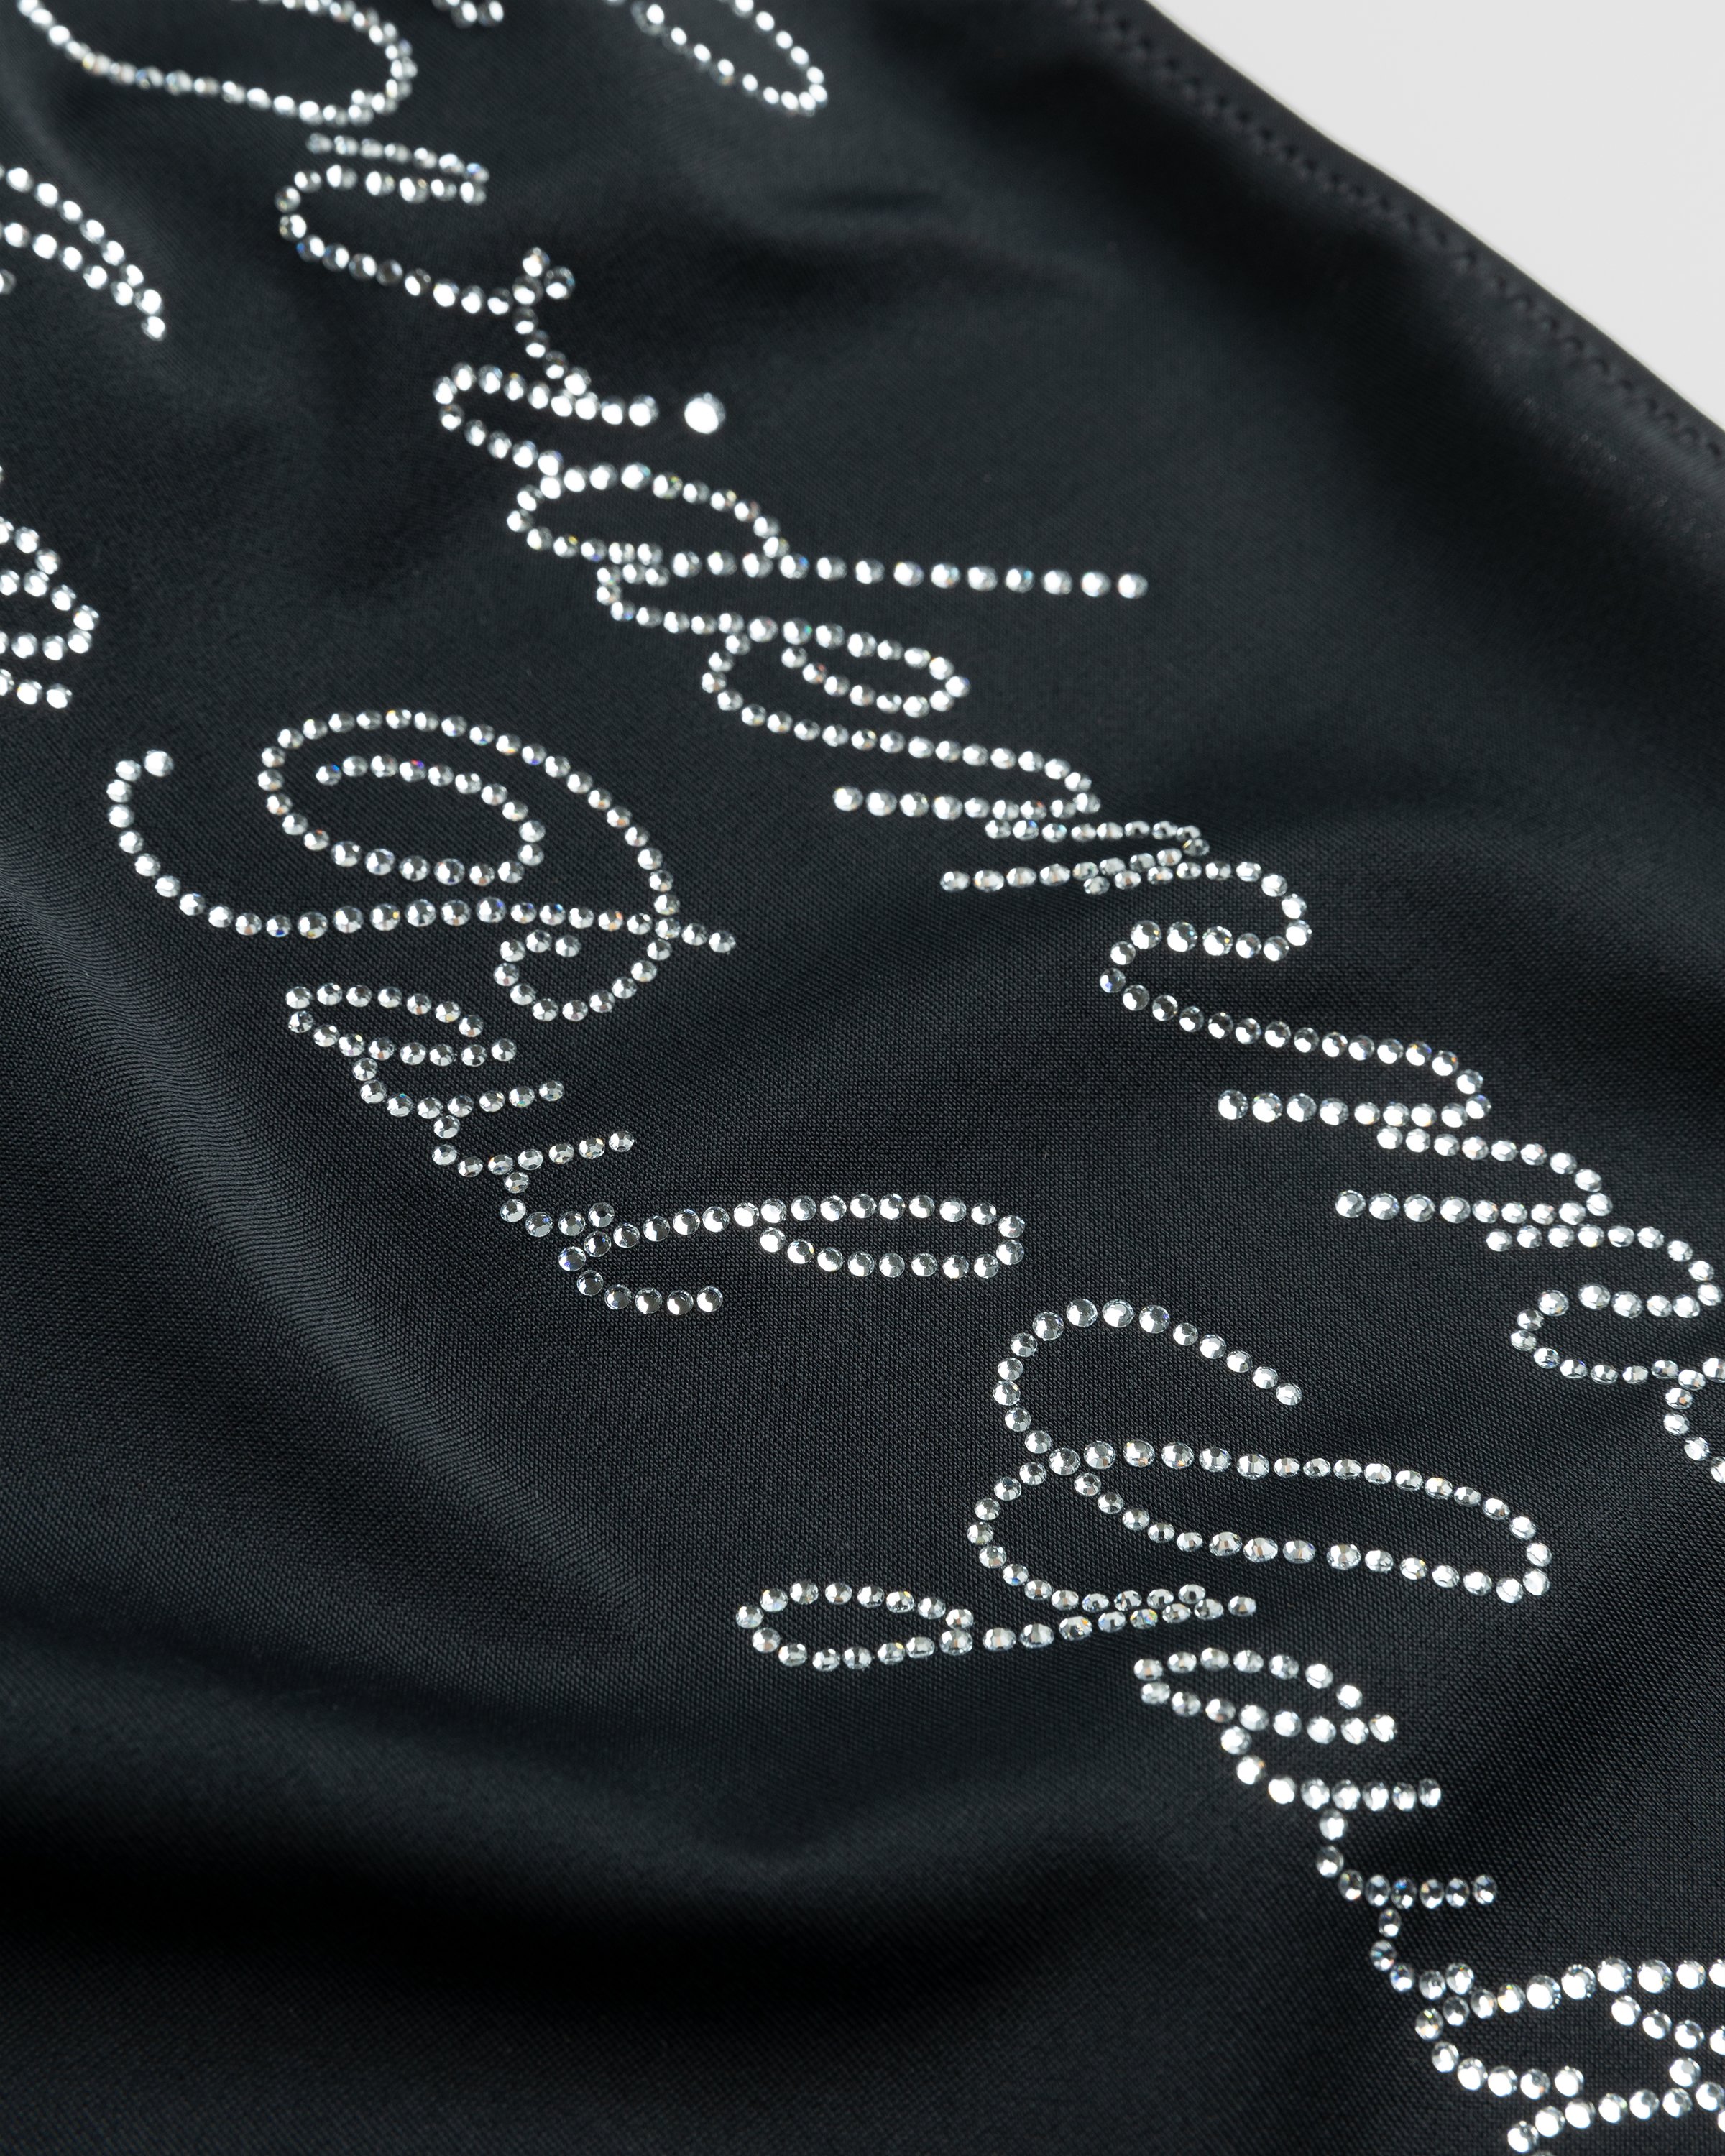 Jean Paul Gaultier - Évidemment Swimsuit Black - Clothing - Black - Image 5